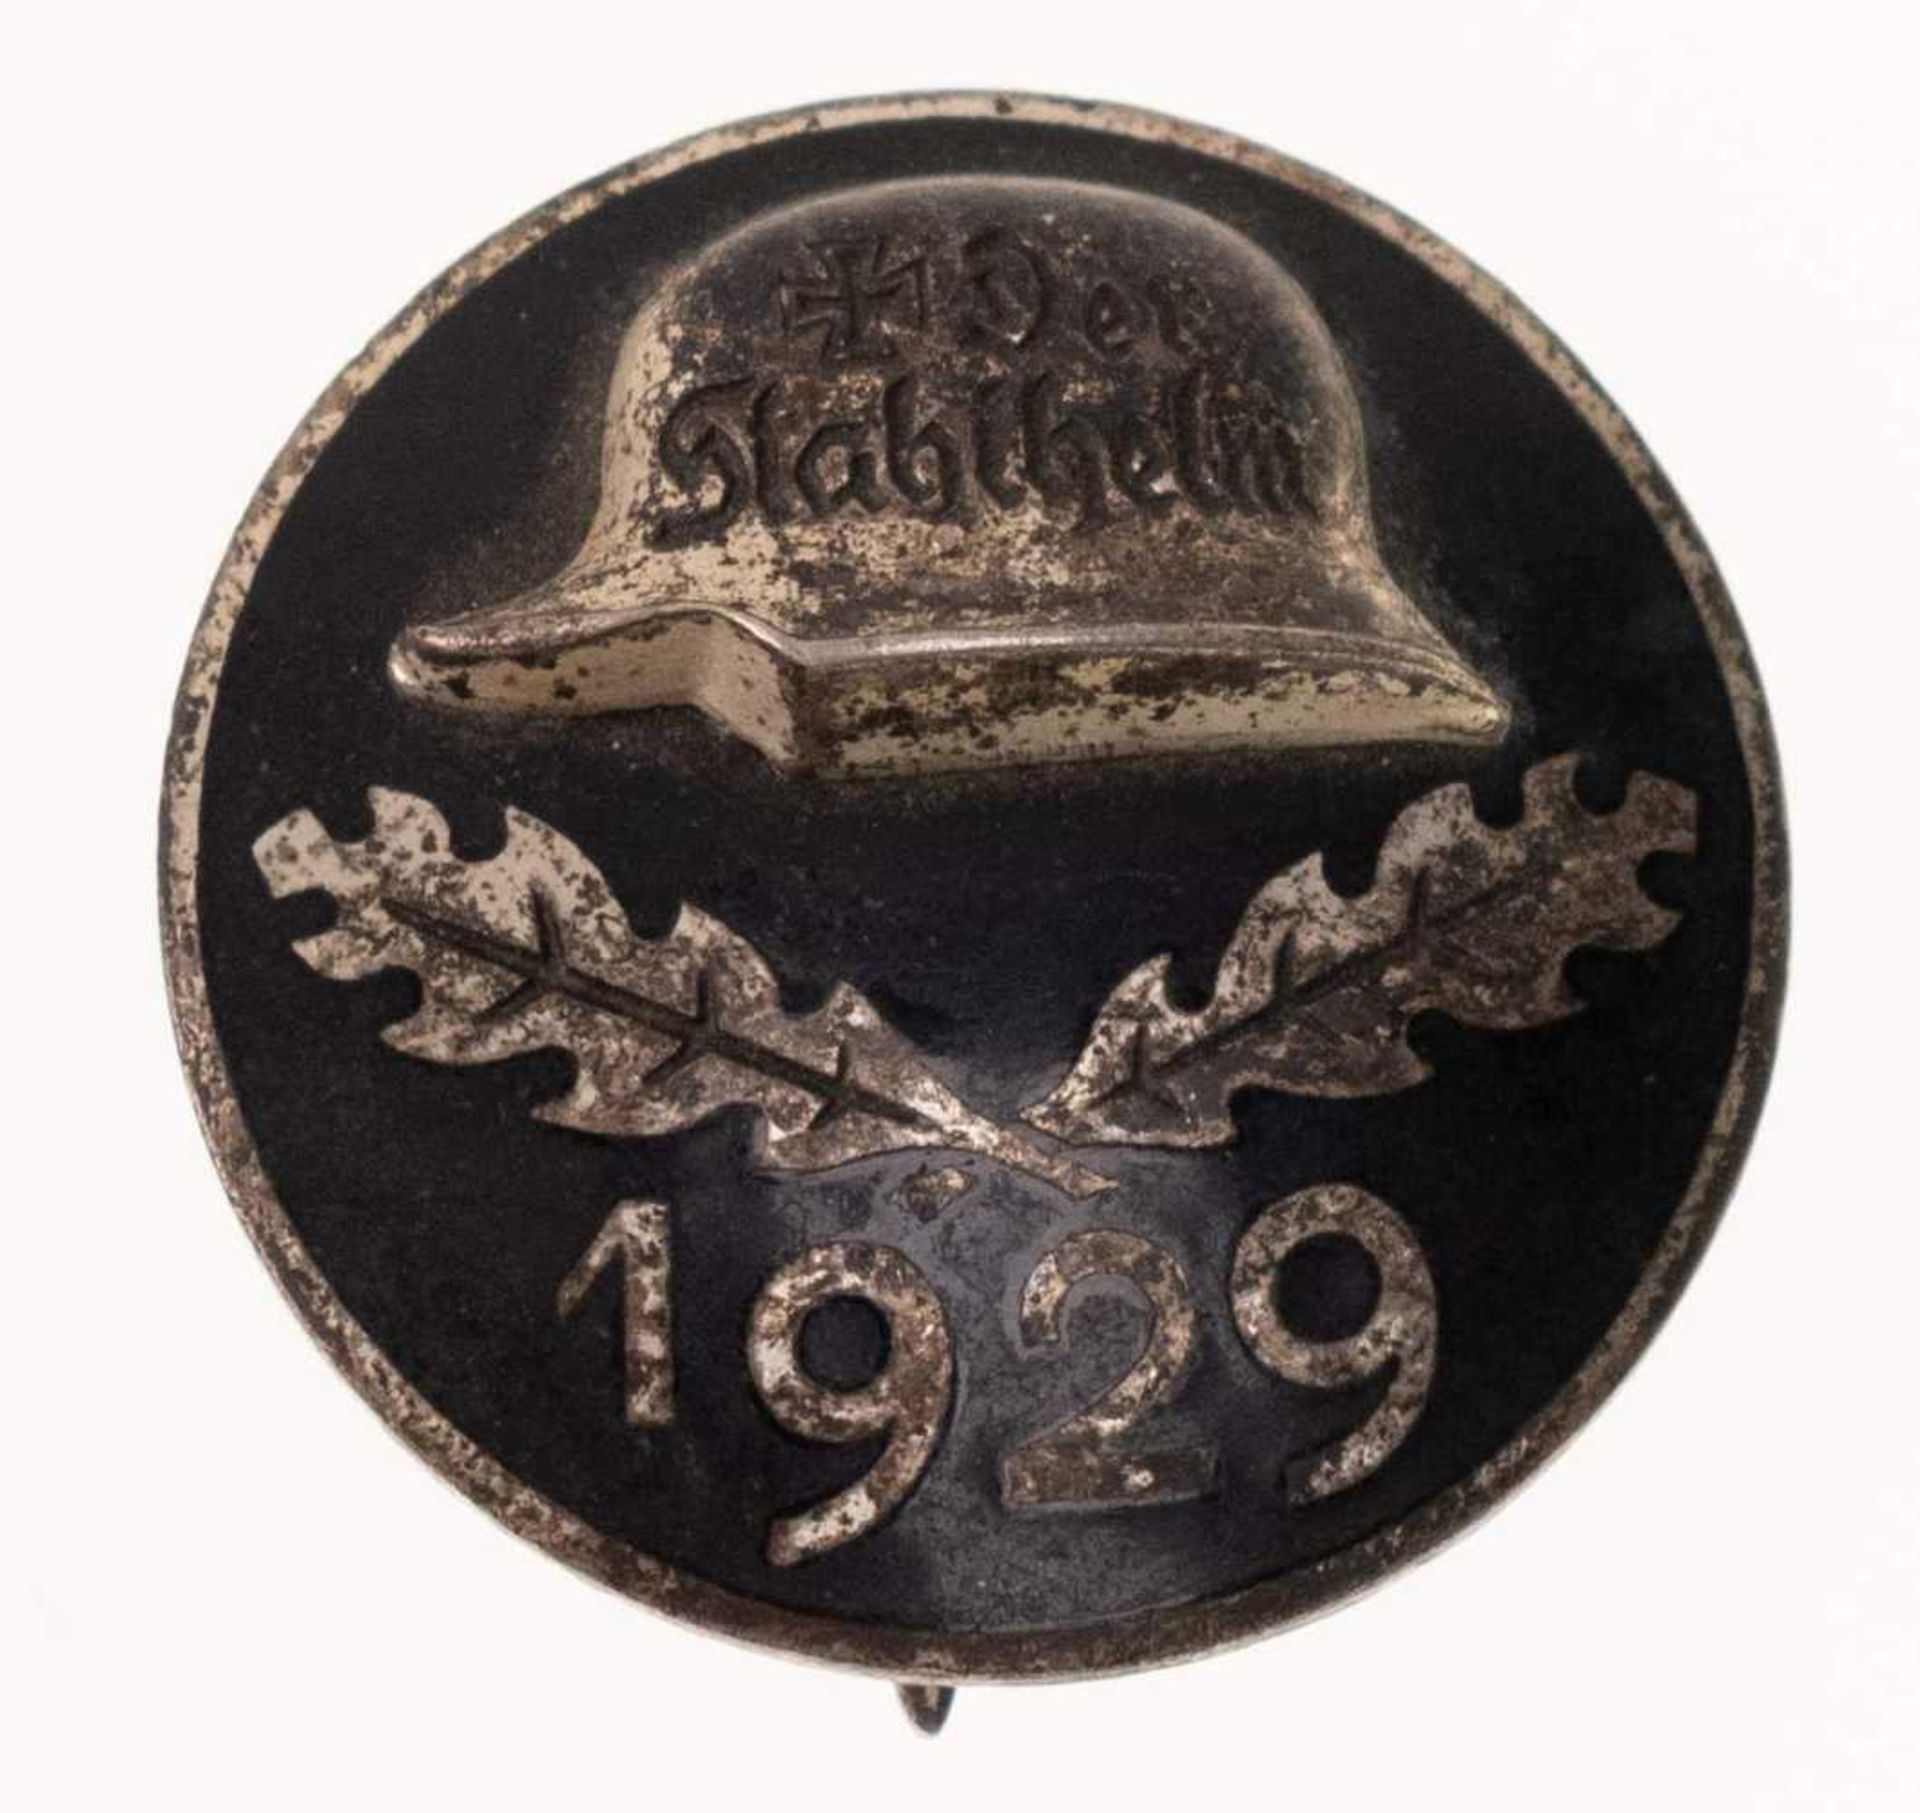 Stahlhelmbund, Diensteintrittsabzeichen 1929, Buntmetall versilbert, rückseitig mit Hersteller \STh\